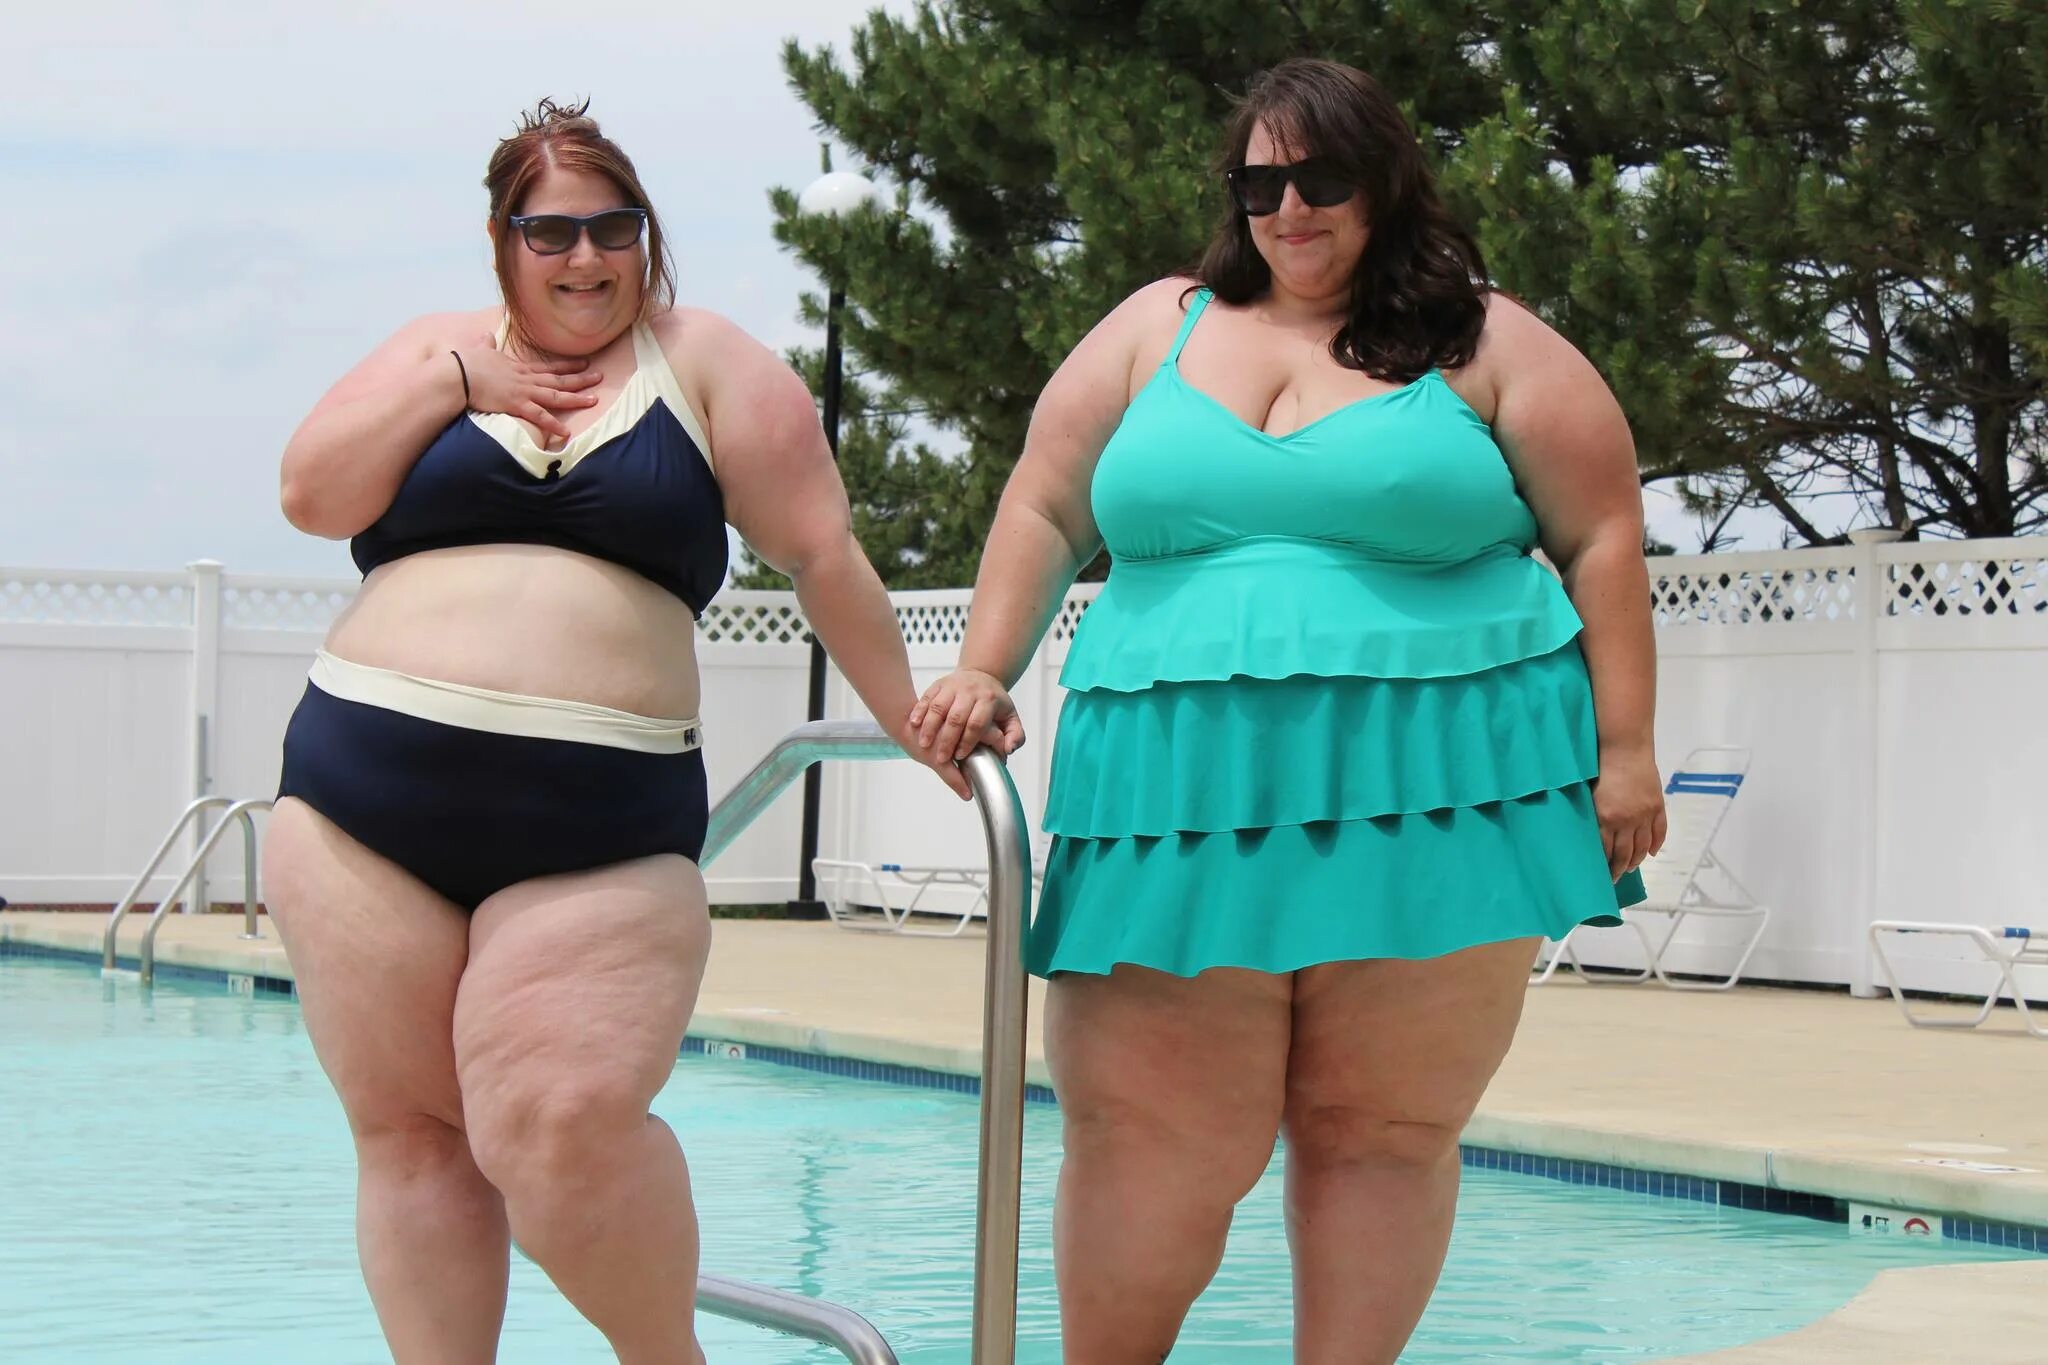 Видимо толстых. Толстуха в купальнике. Толстая девушка в купальном костюме. Две толстые женщины. Толстые подруги в купальниках.